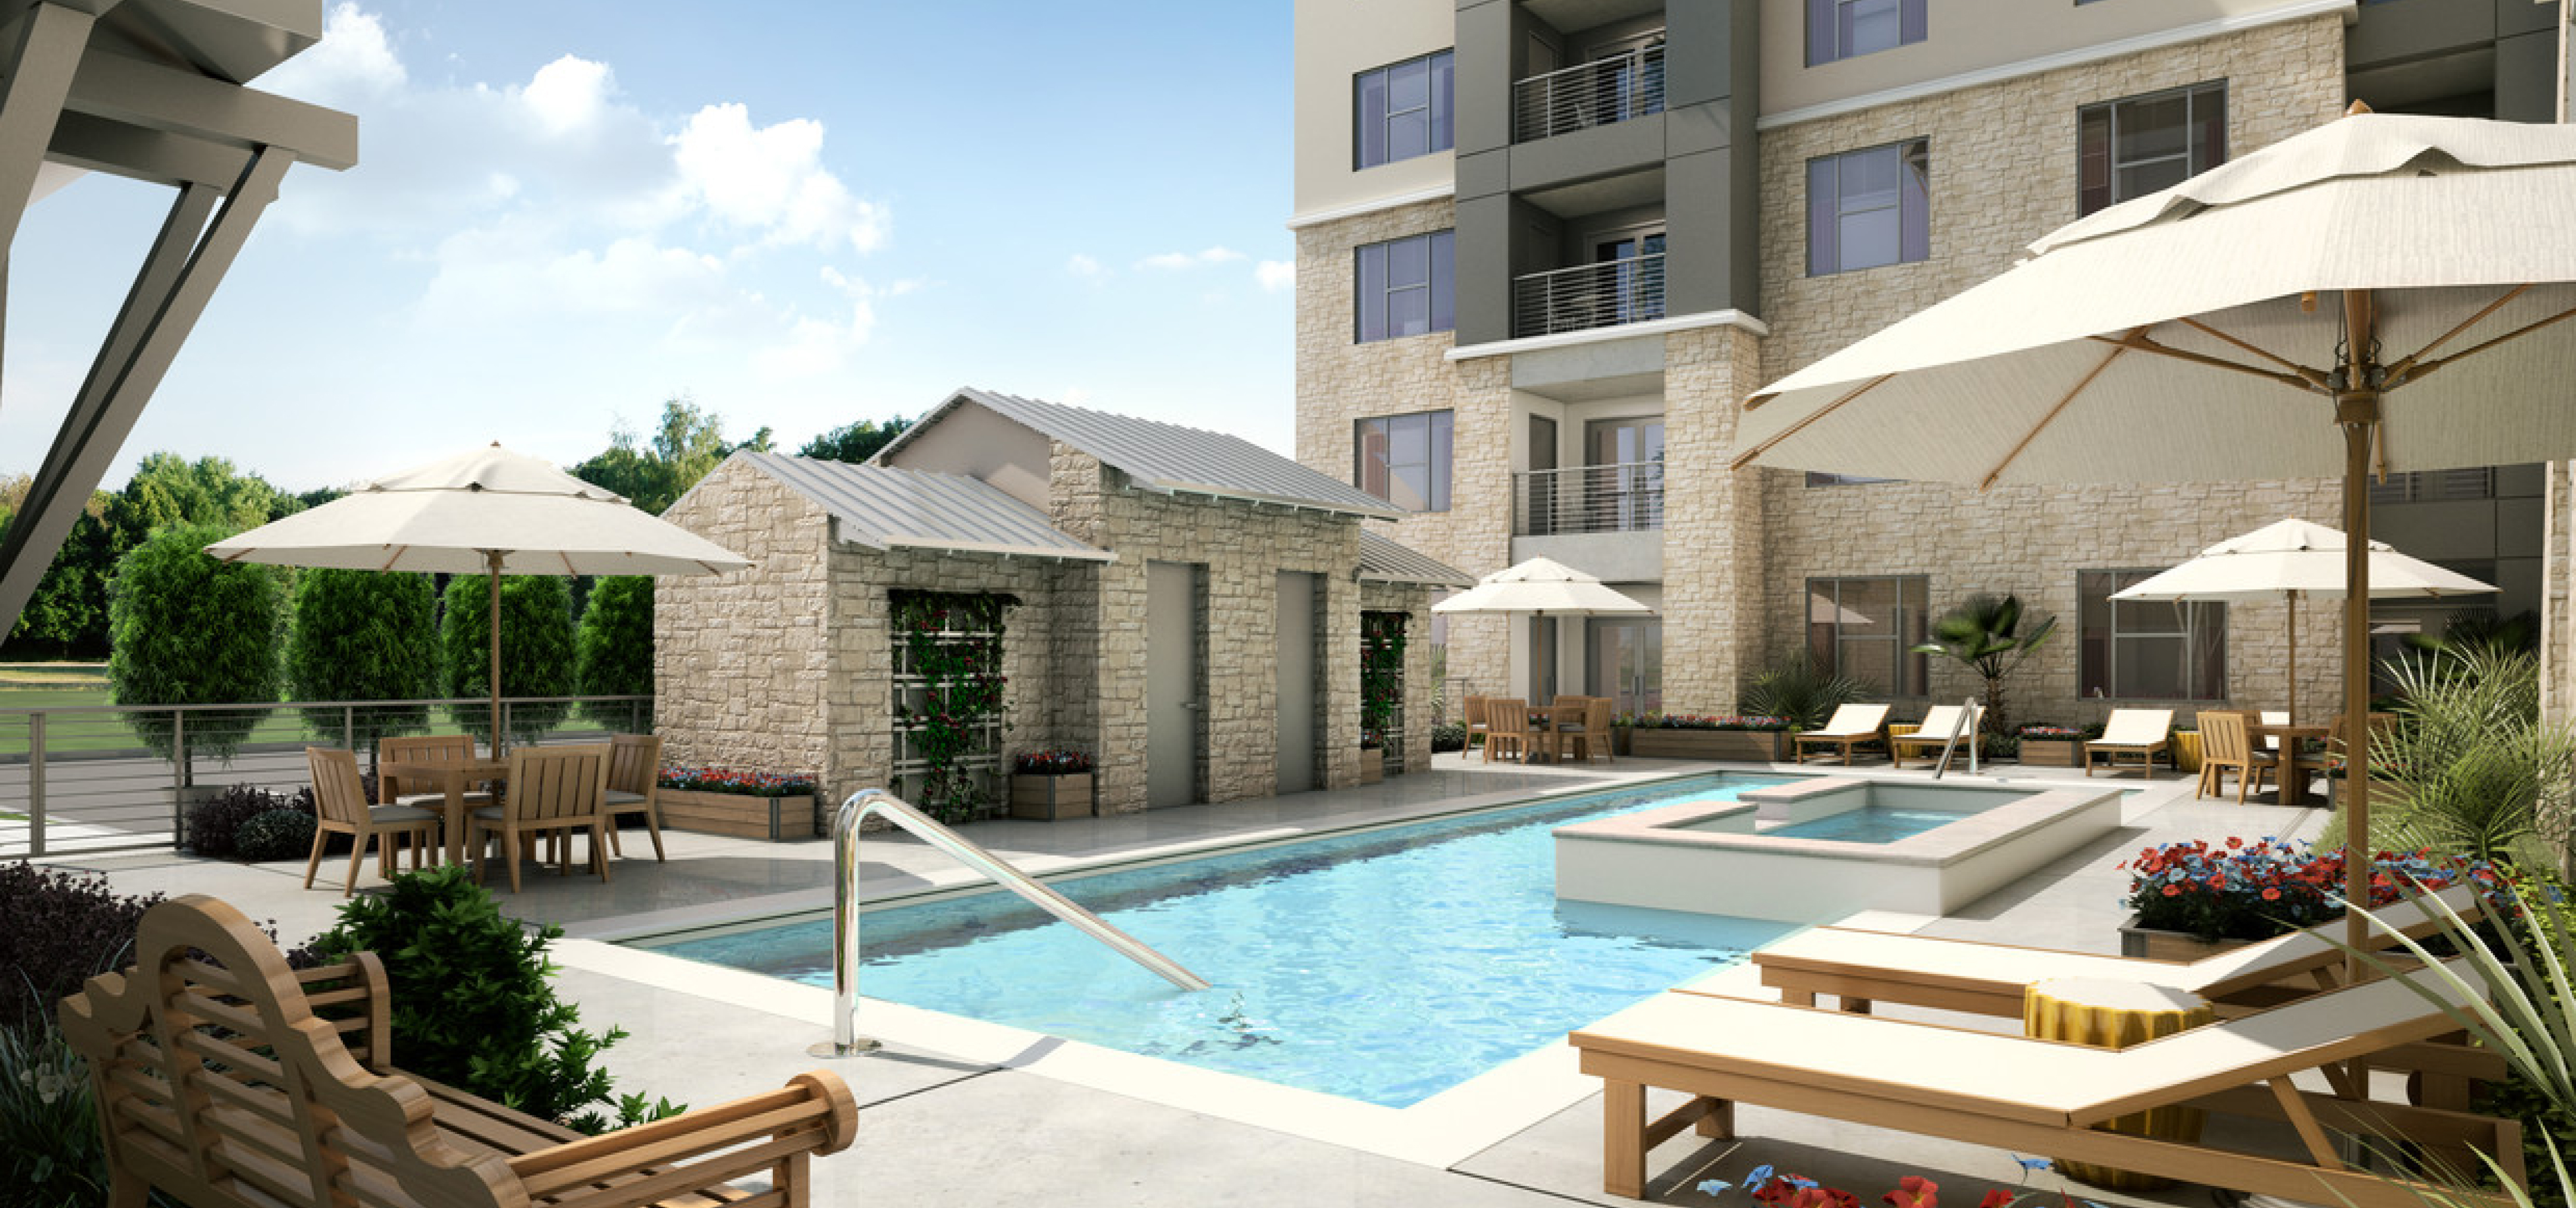 Pool in Verena at Leander Luxury Senior Apartments Leander, TX